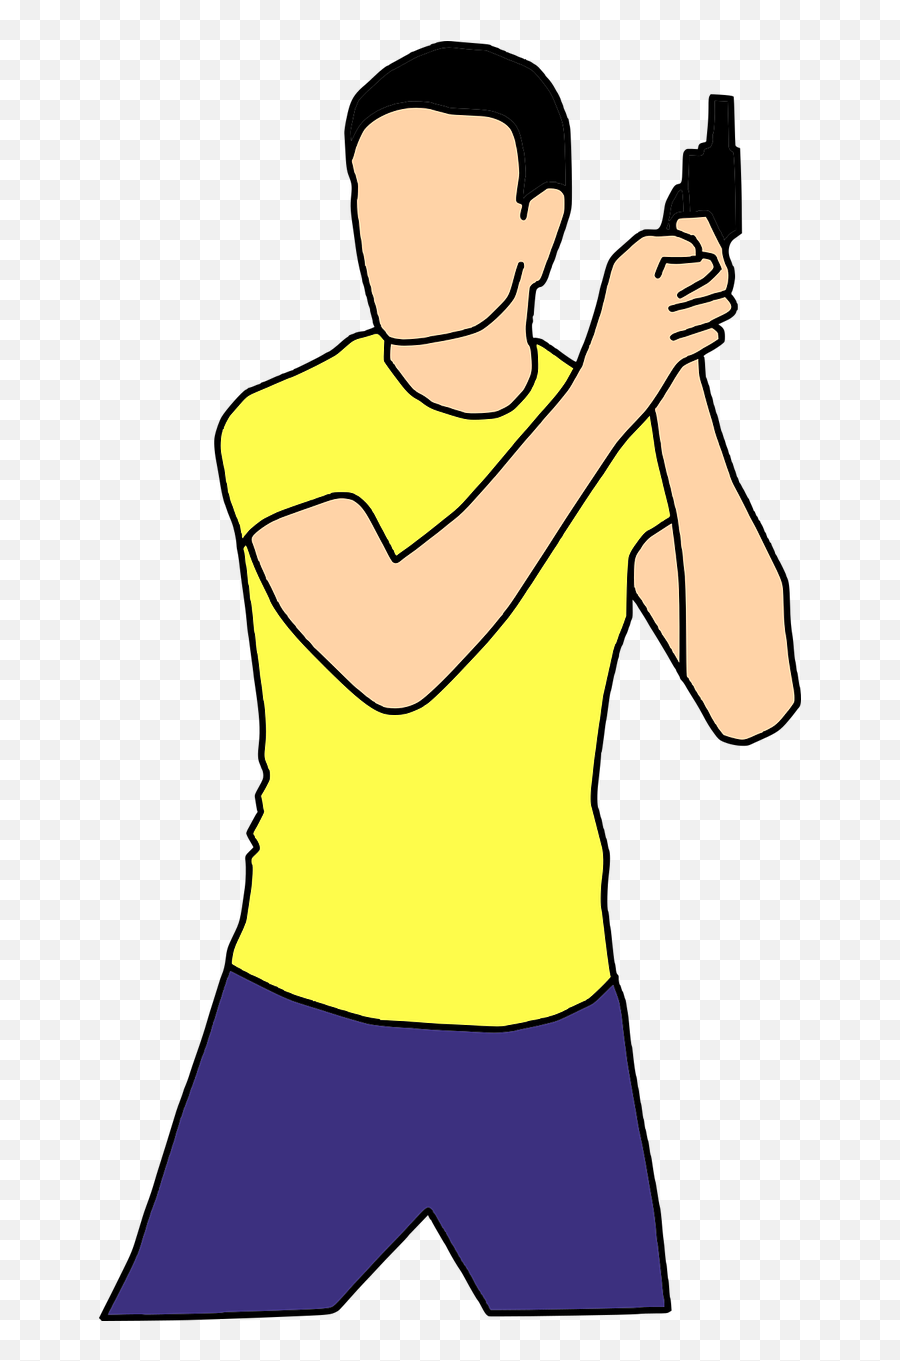 Action Gun Man - Free Vector Graphic On Pixabay Animation Man With Gun Emoji,Holding Gun Png